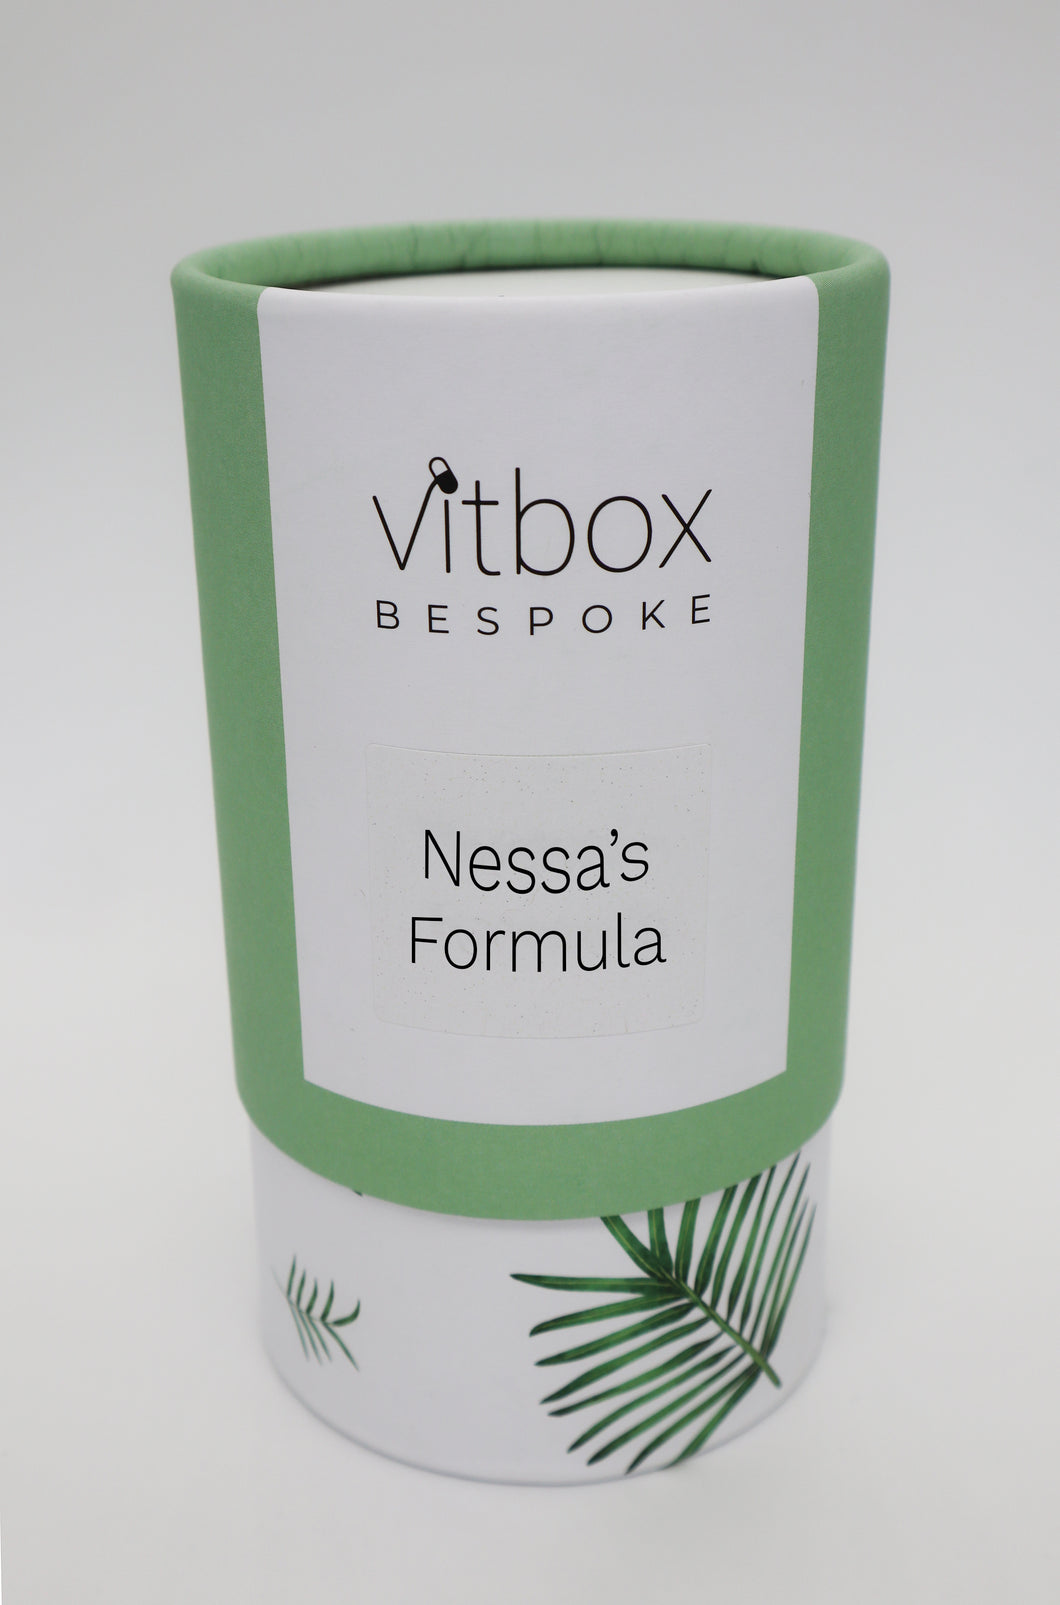 Nessa's Vitbox Bespoke